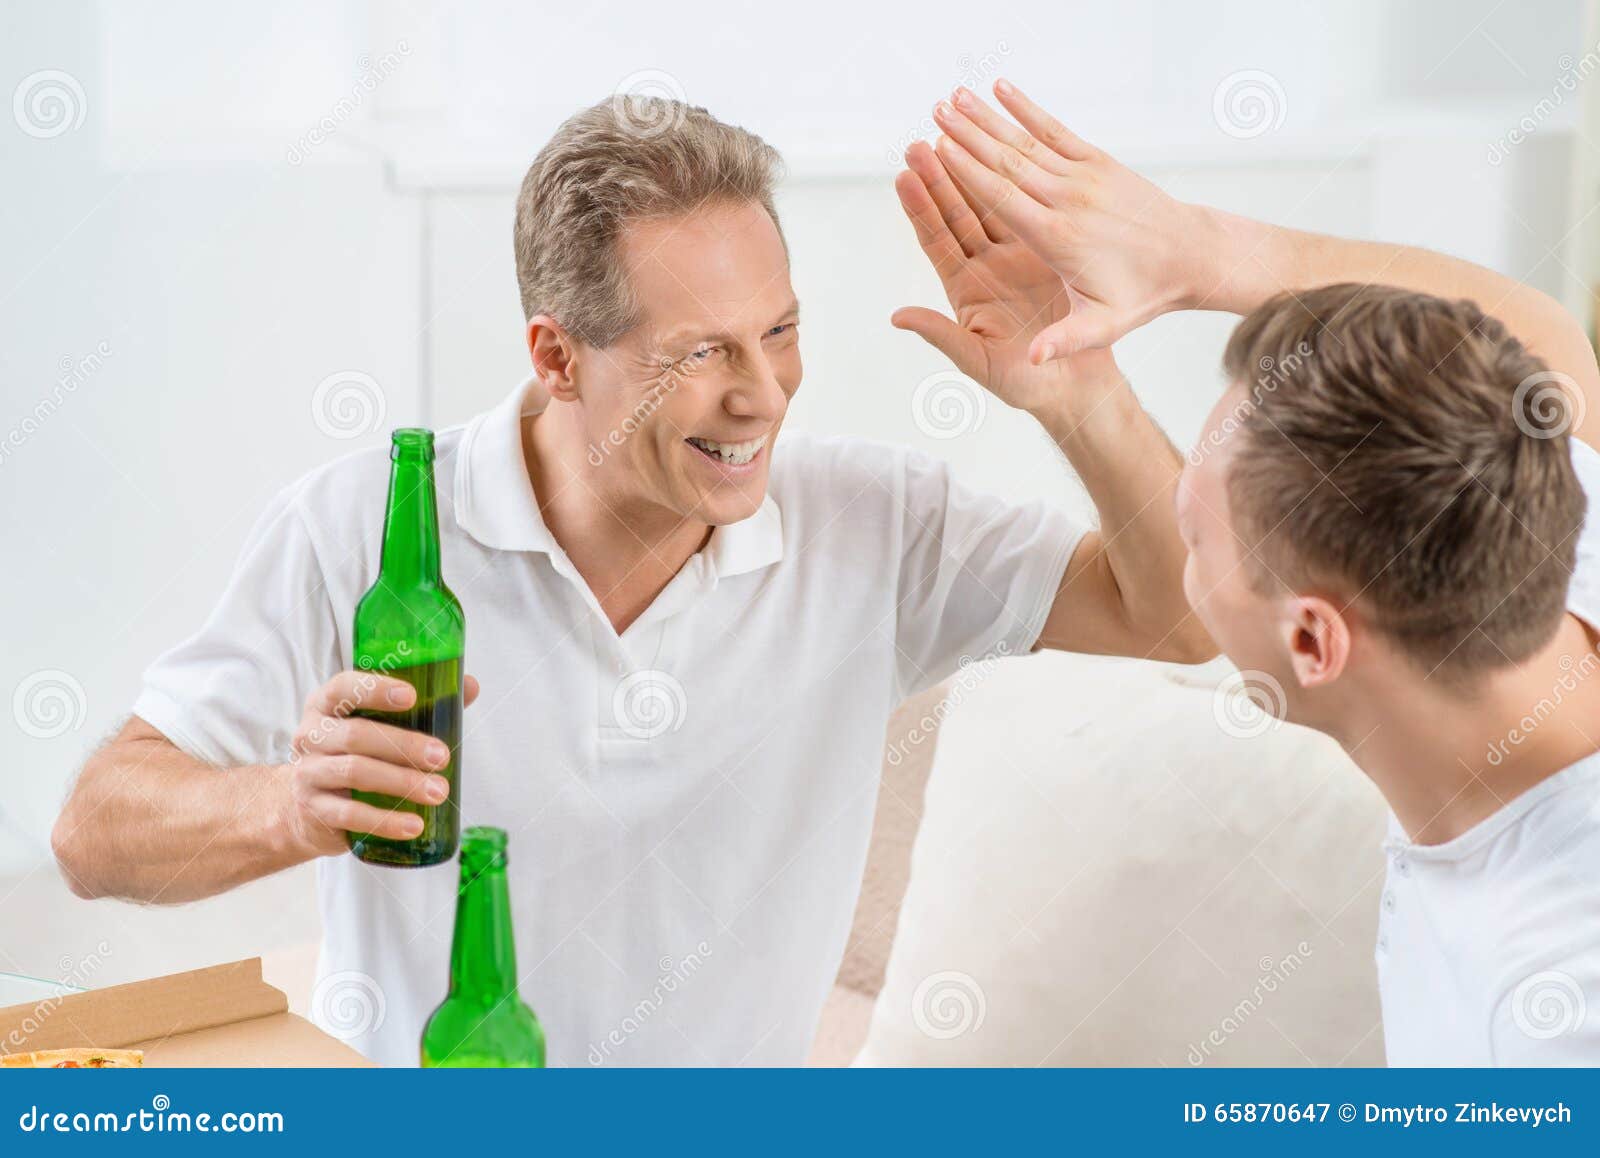 Взрослый сын пьет. Отец с сыном пьют пиво. Фото папа пьющий. Папа пил пиво. Отец пьет фото.